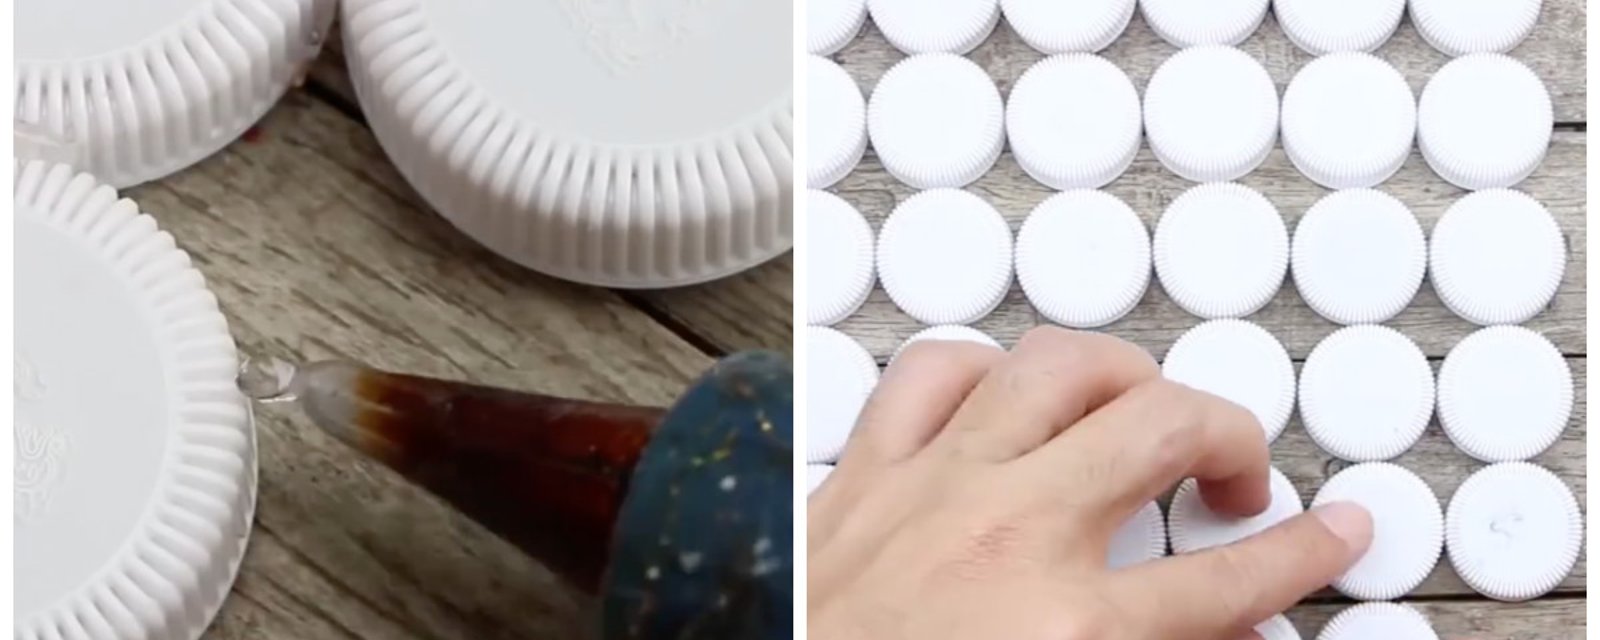 Elle colle des dizaines de bouchons en plastique ensemble et quand elle termine, son projet est fabuleux!